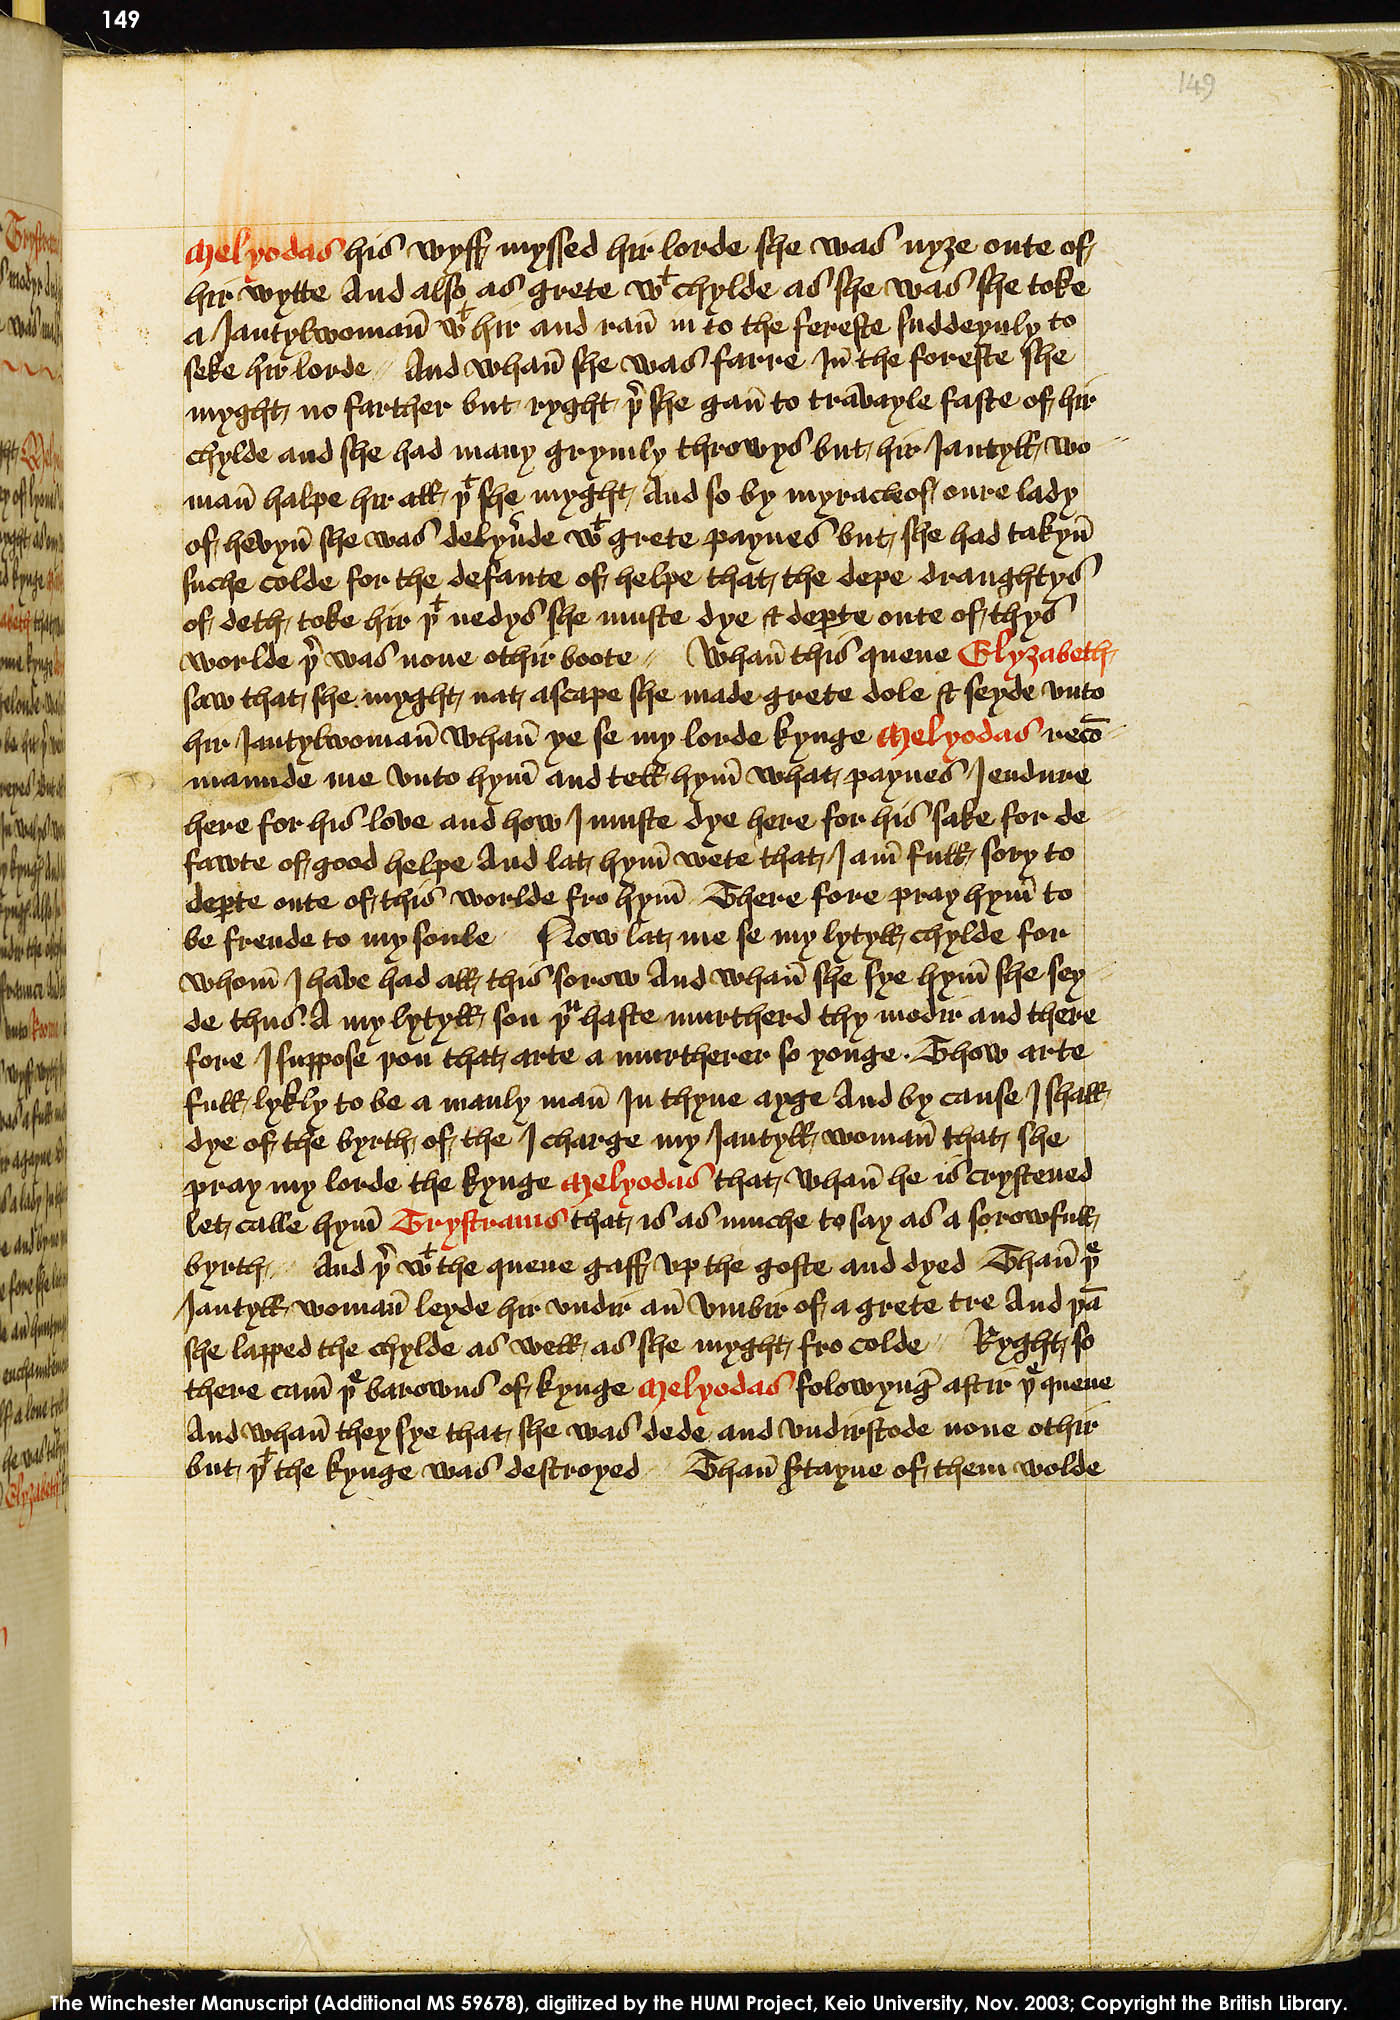 Folio 149r